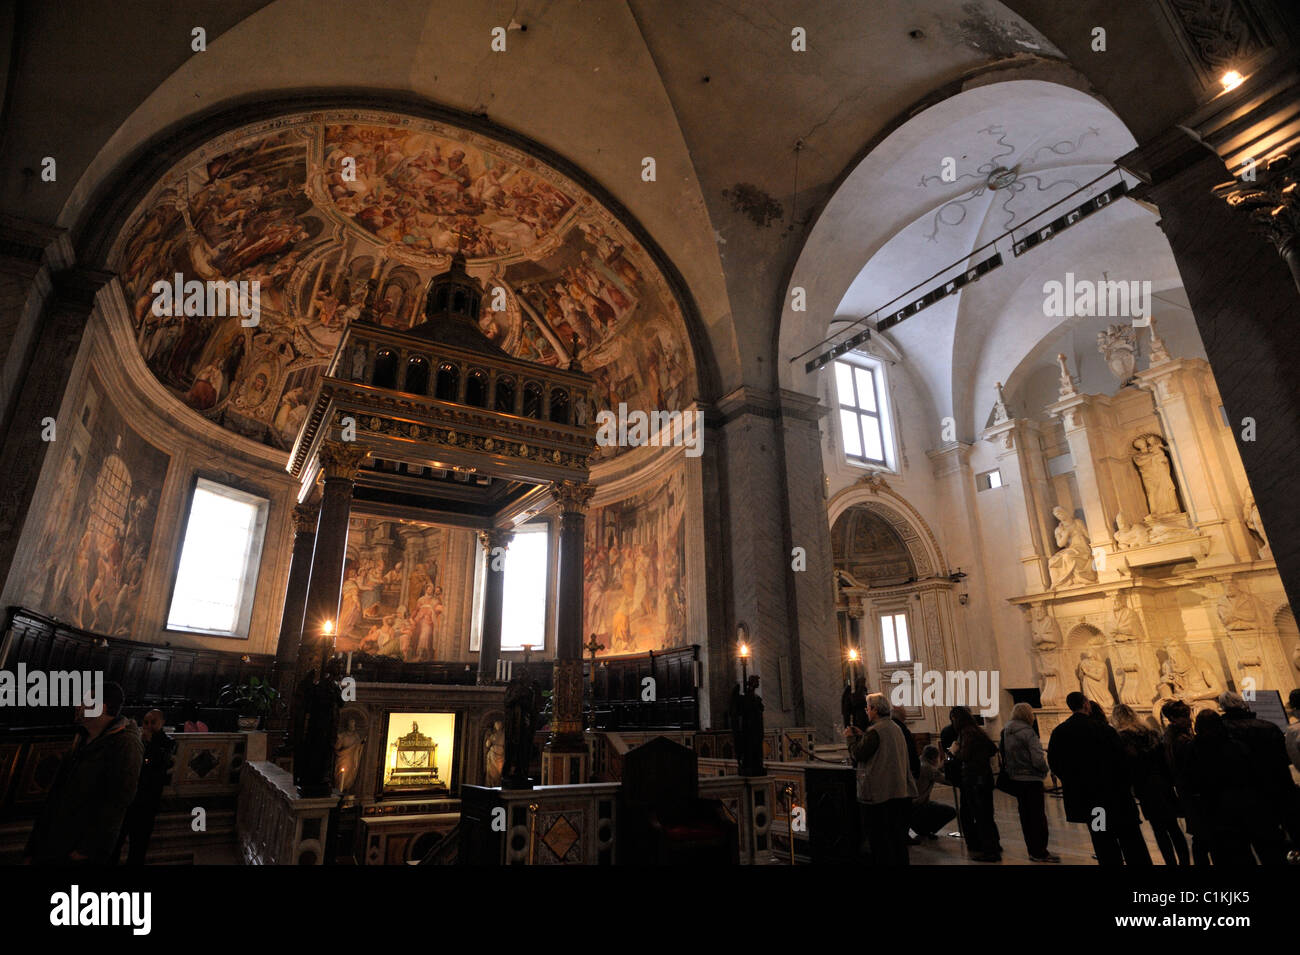 Italy, Rome, basilica of San Pietro in Vincoli Stock Photo